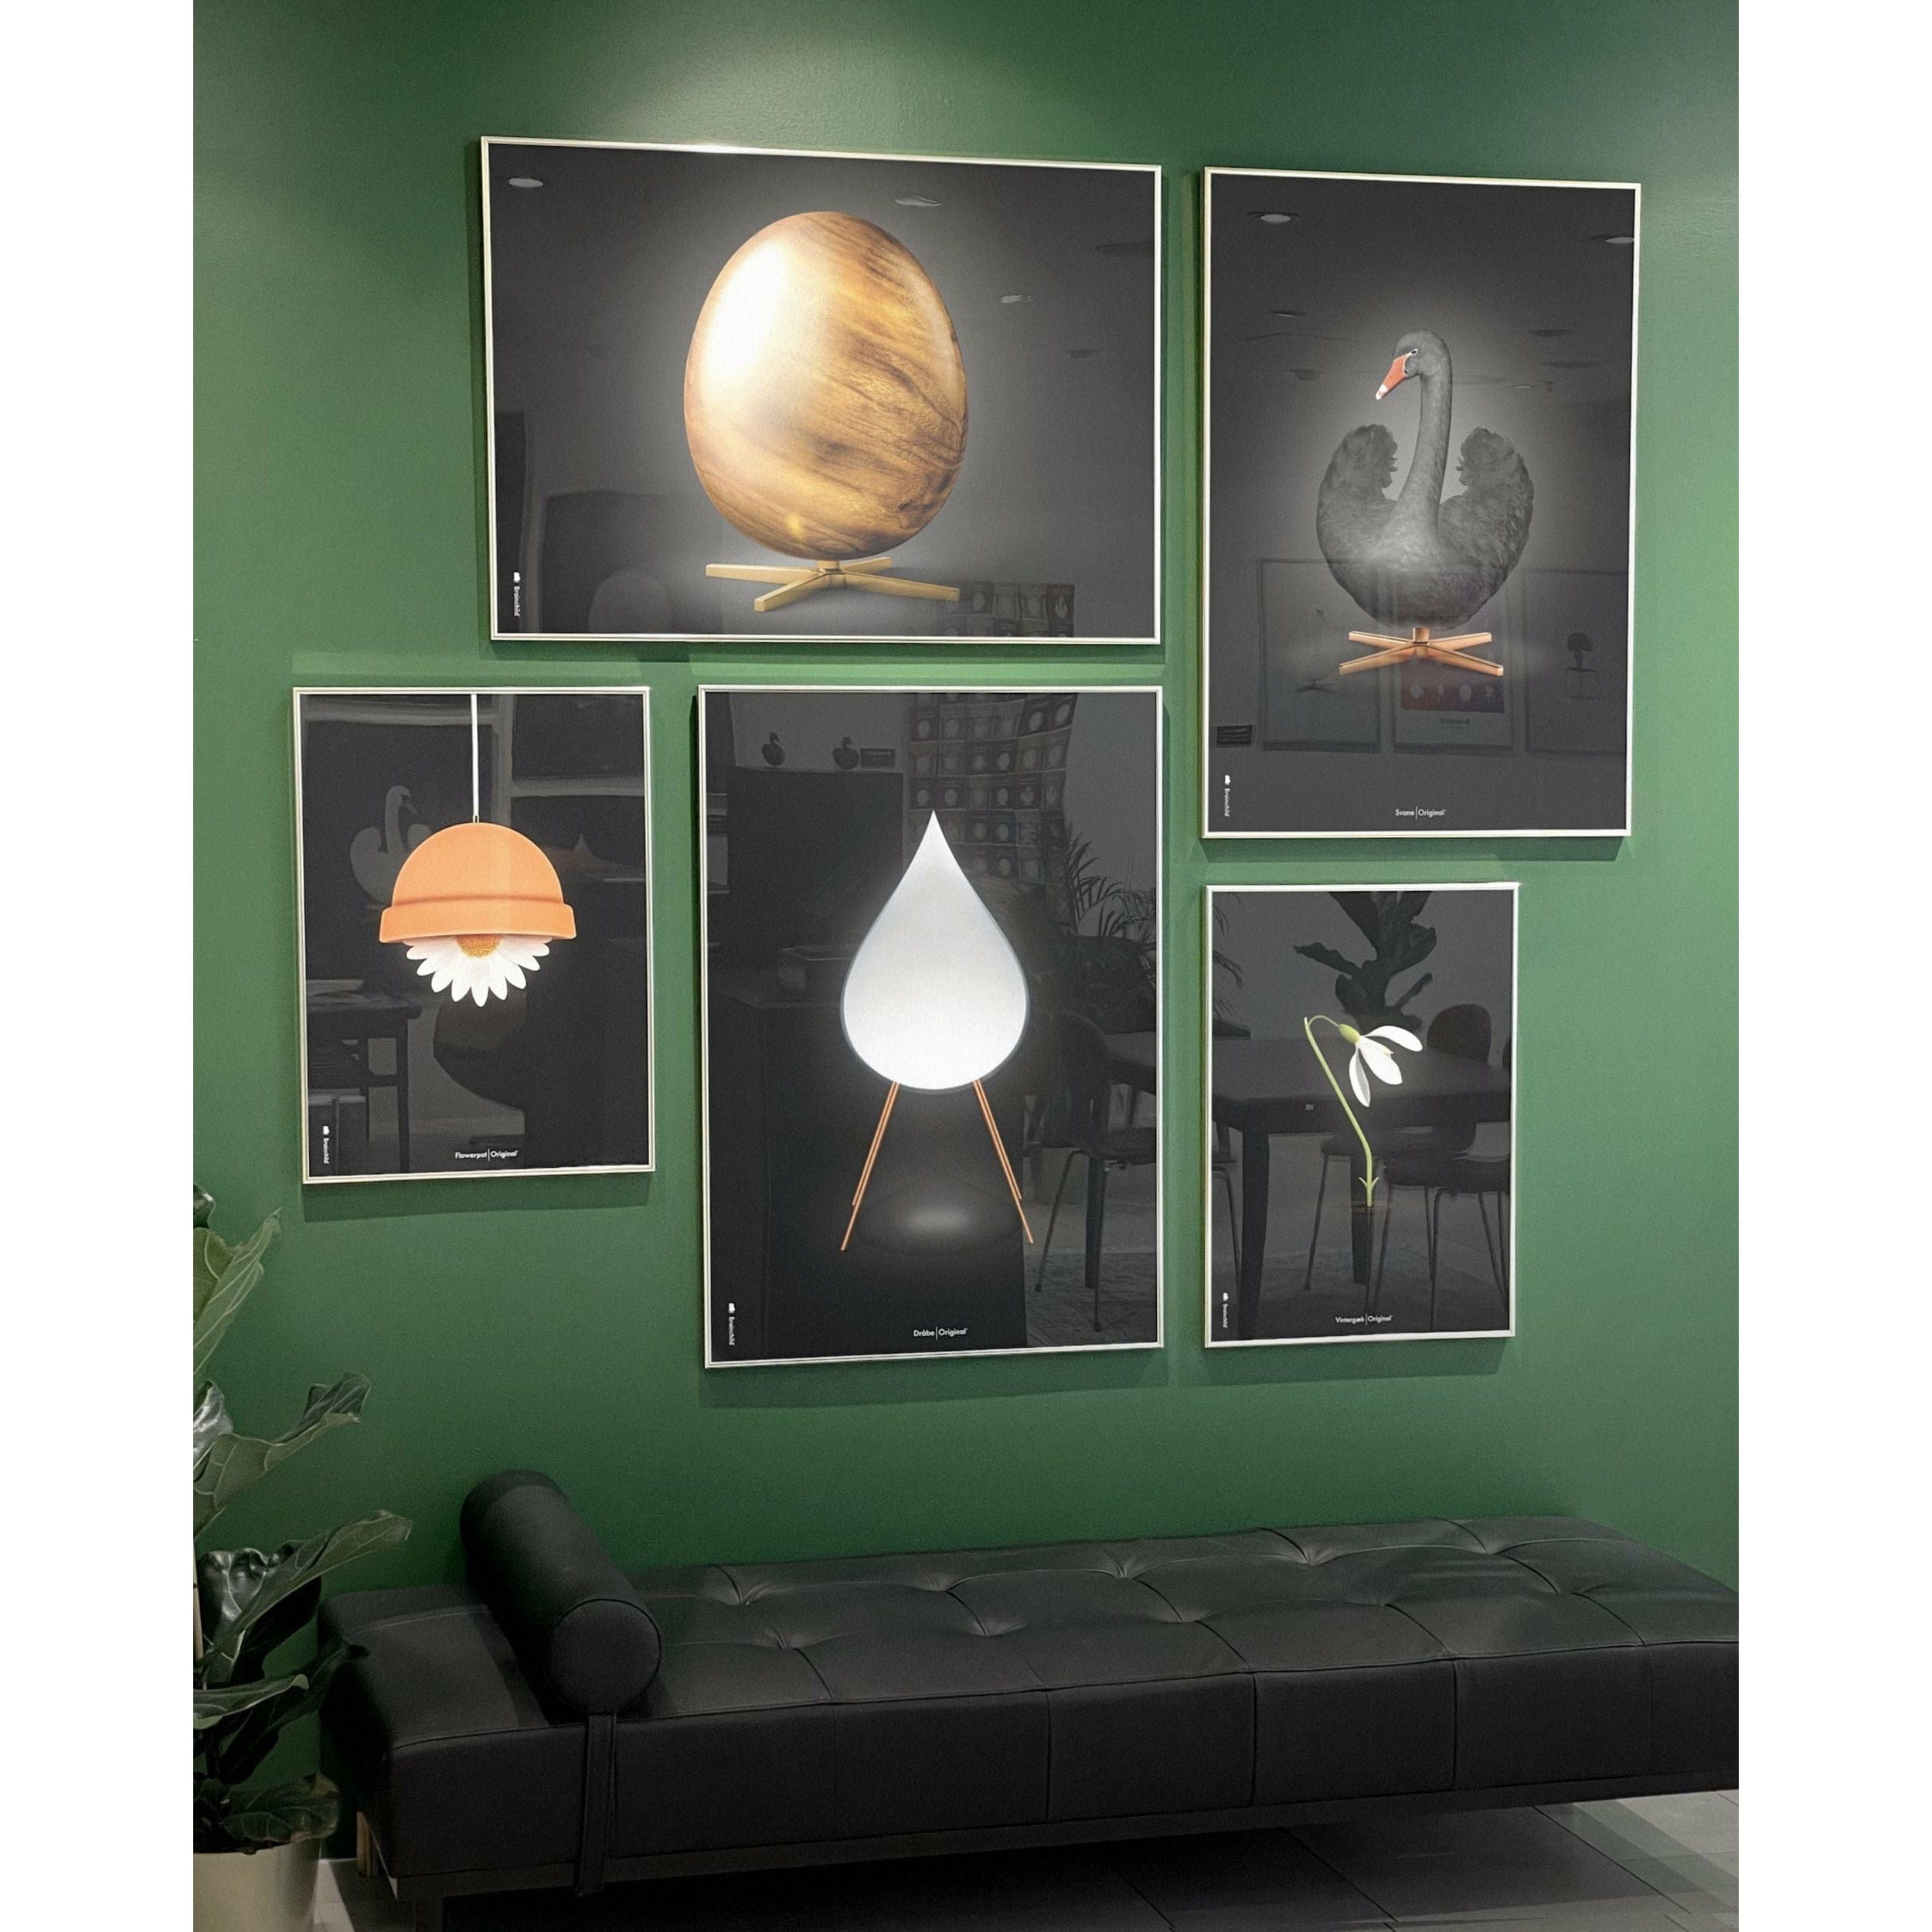 Brainchild Egg Cross Format Poster, Frame Made Of Light Wood 70 X100 Cm, Black